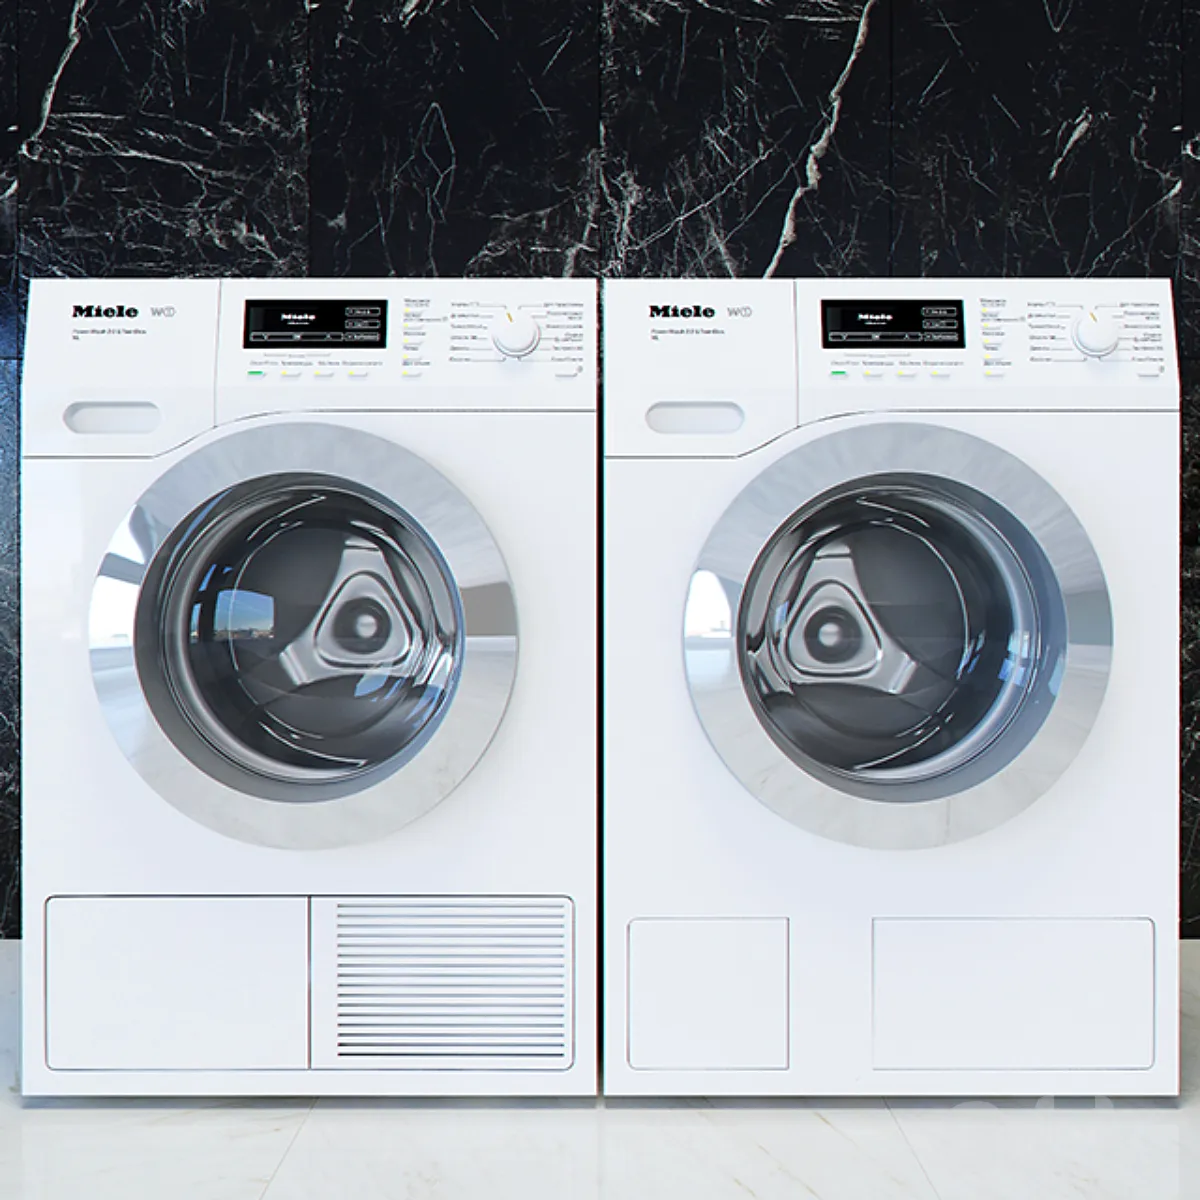 دانلود Miele T1 W1 washing machines and dryers